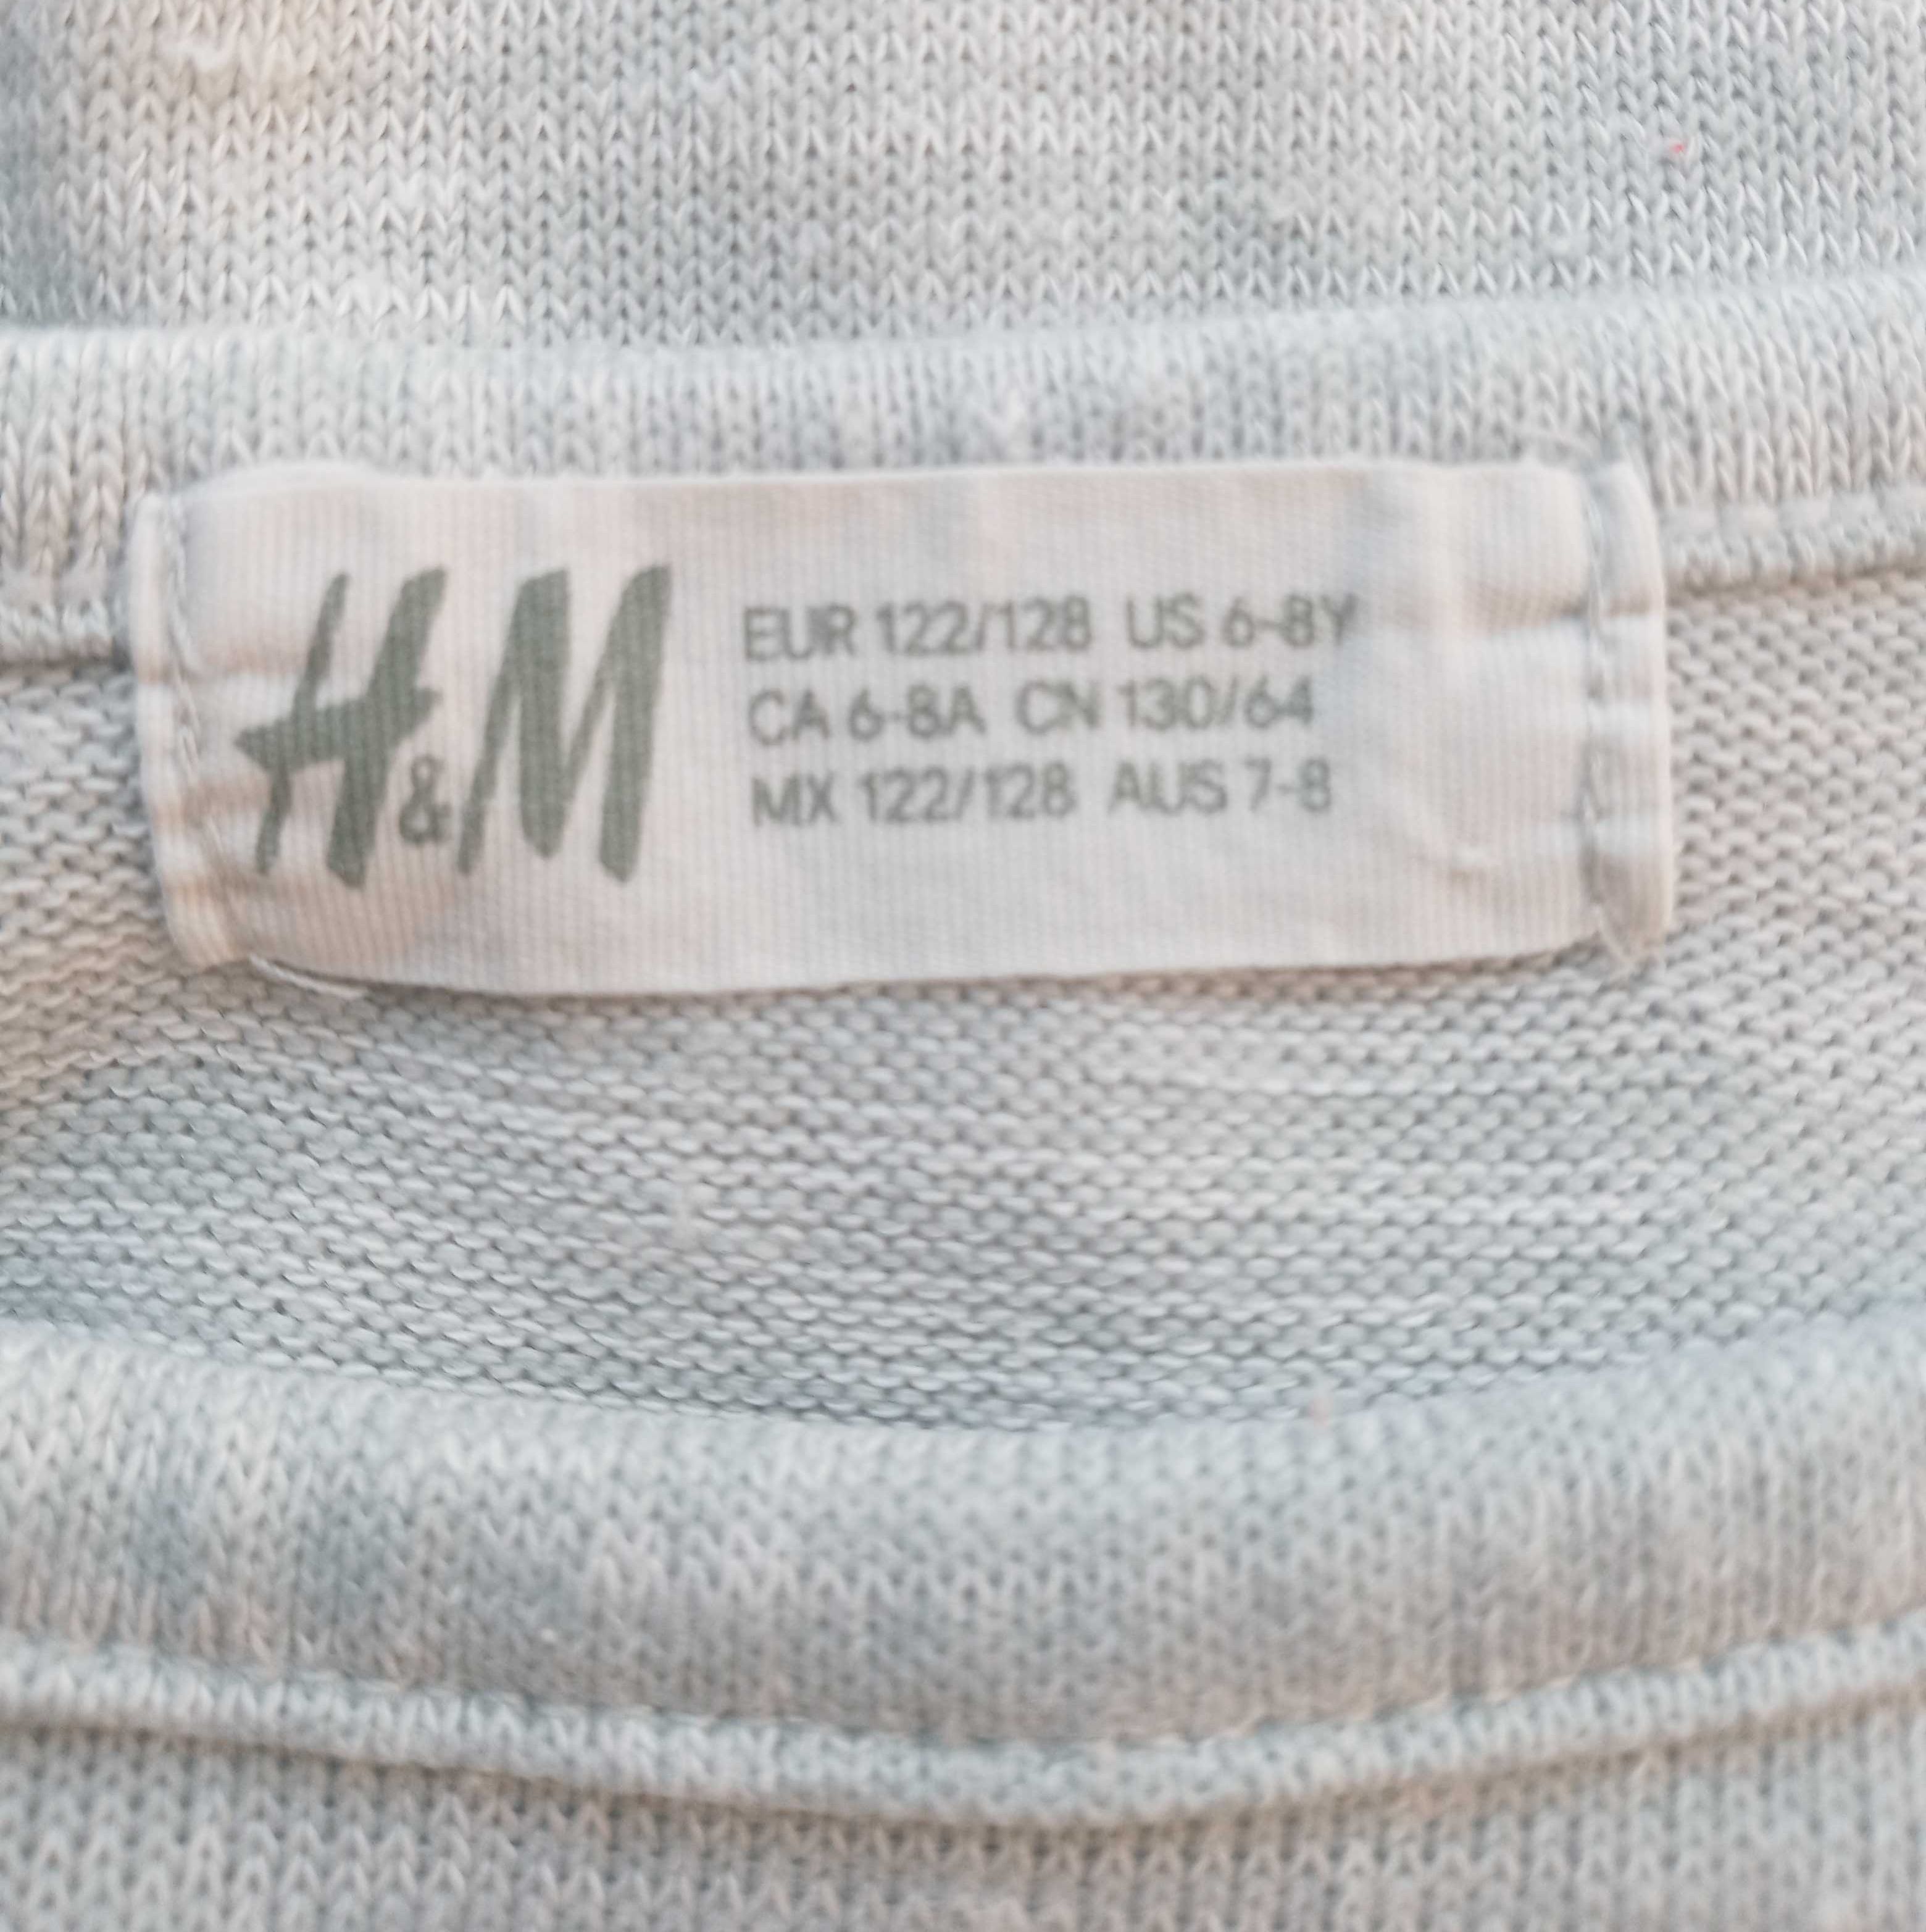 H&M szara bluzka z długim rękawem 122 / 128 cm 6 - 8 lat